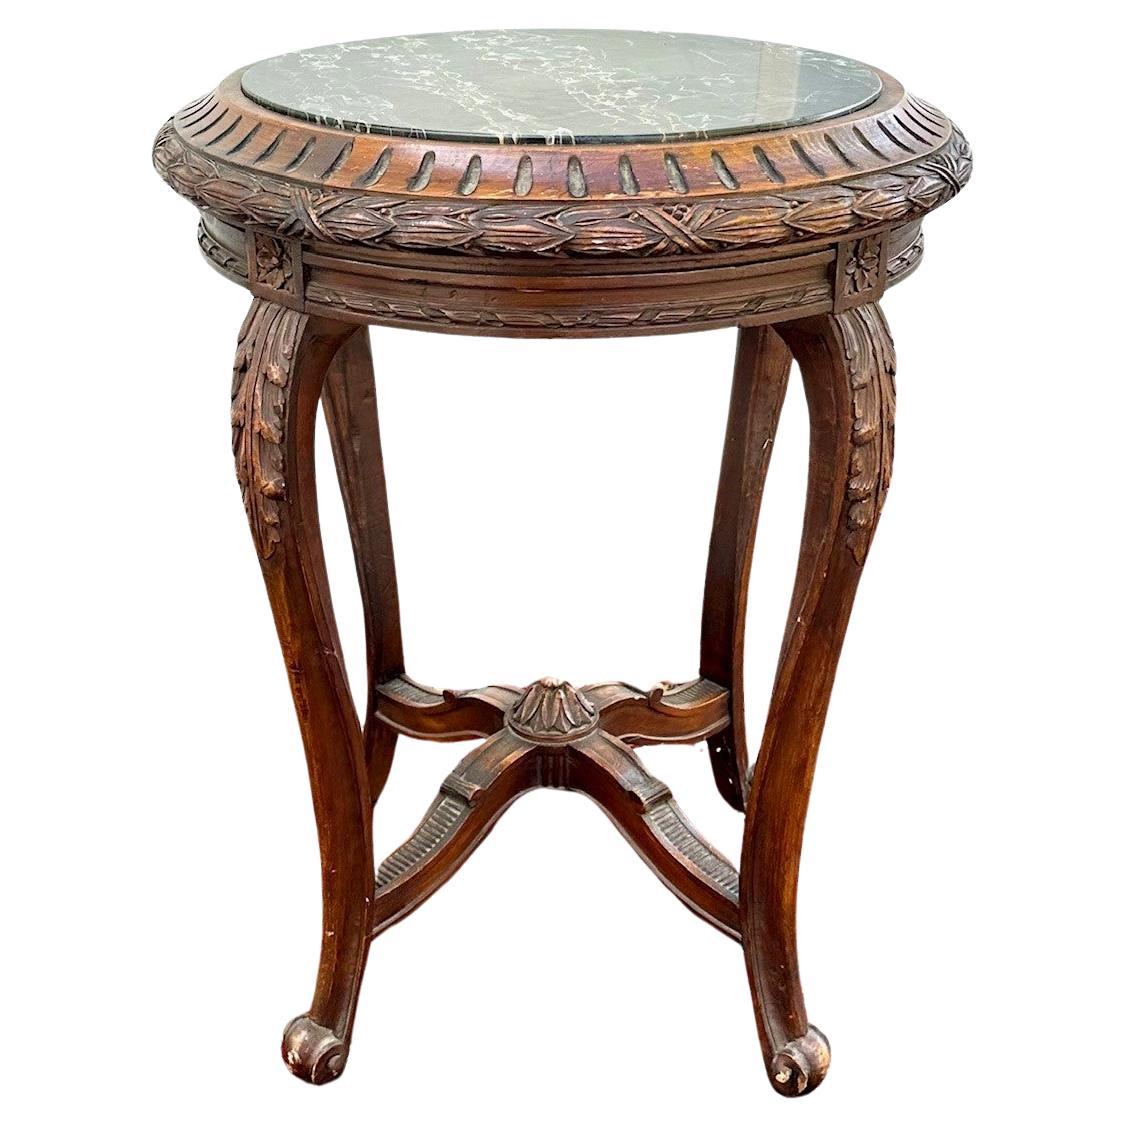 Table d'appoint ronde de style Régence française du 19ème siècle avec plateau en marbre.